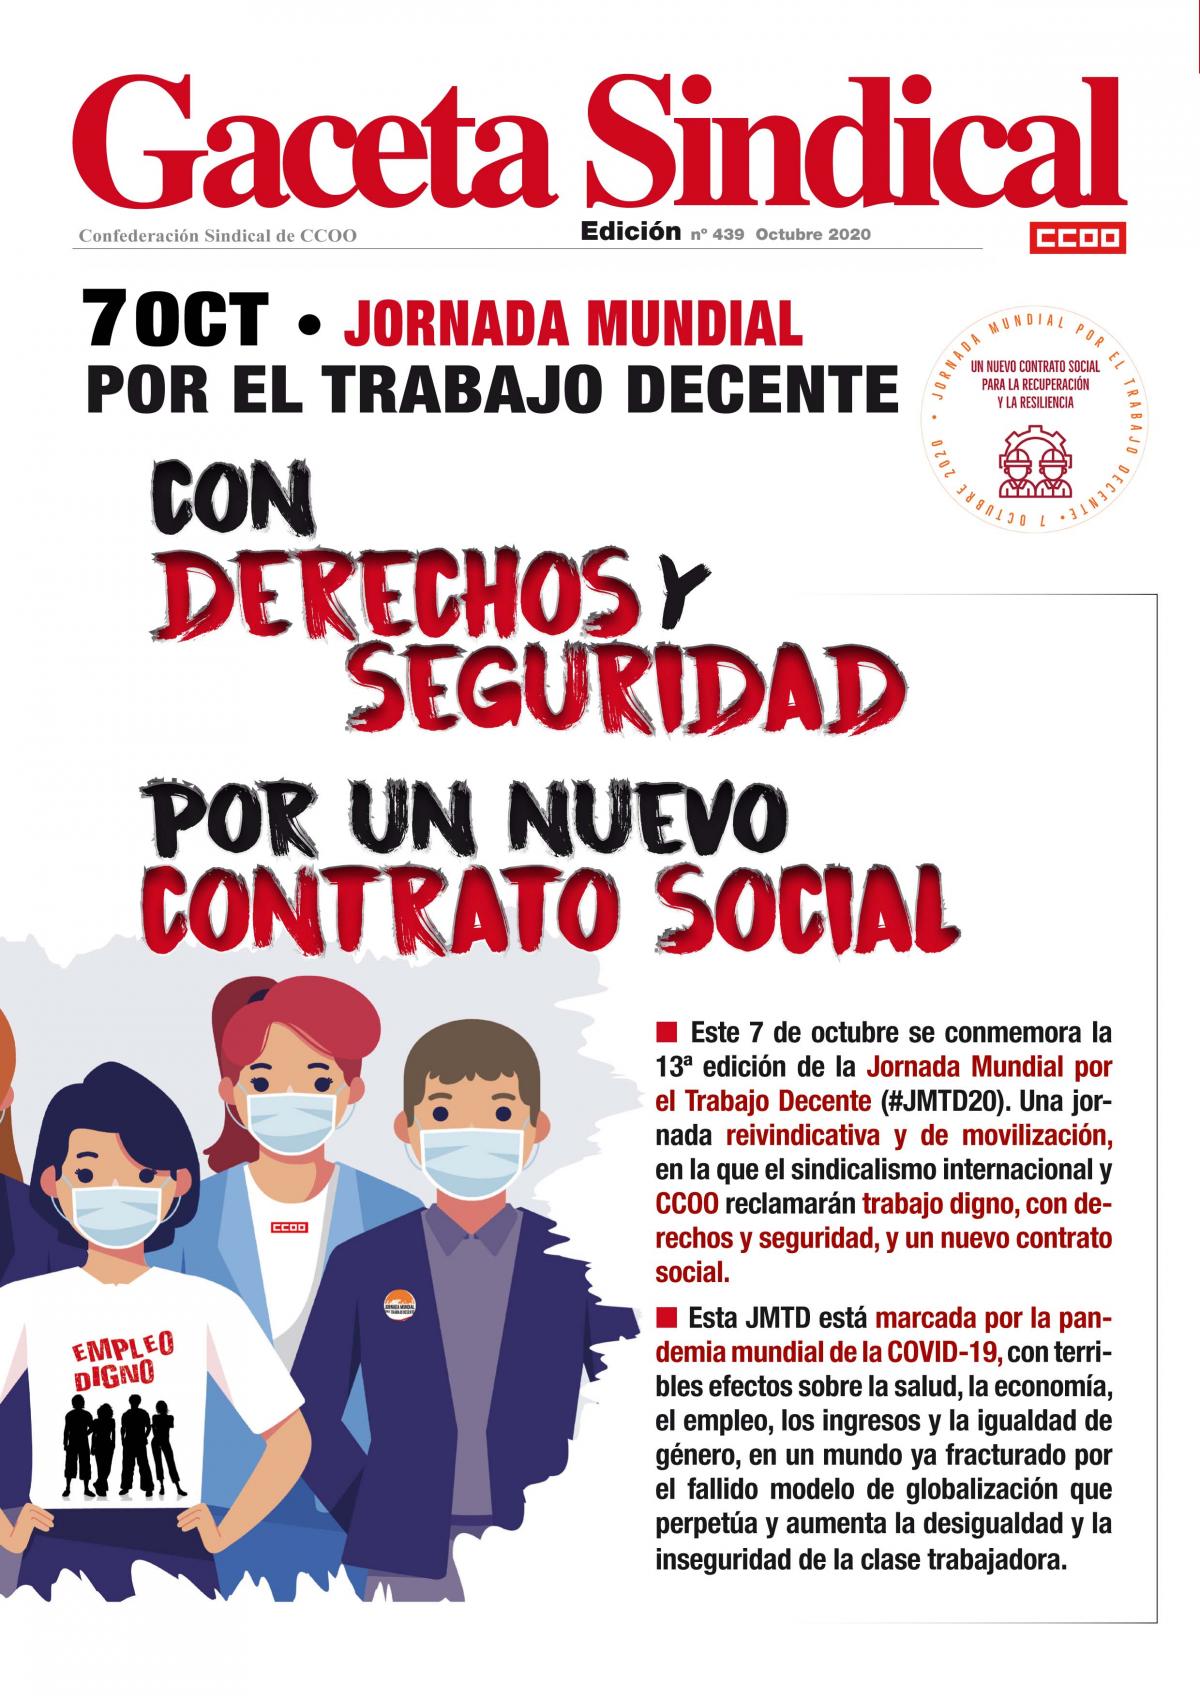 Gaceta Sindical 7 Octubre 2020, Jornada Mundial Trabajo Decente